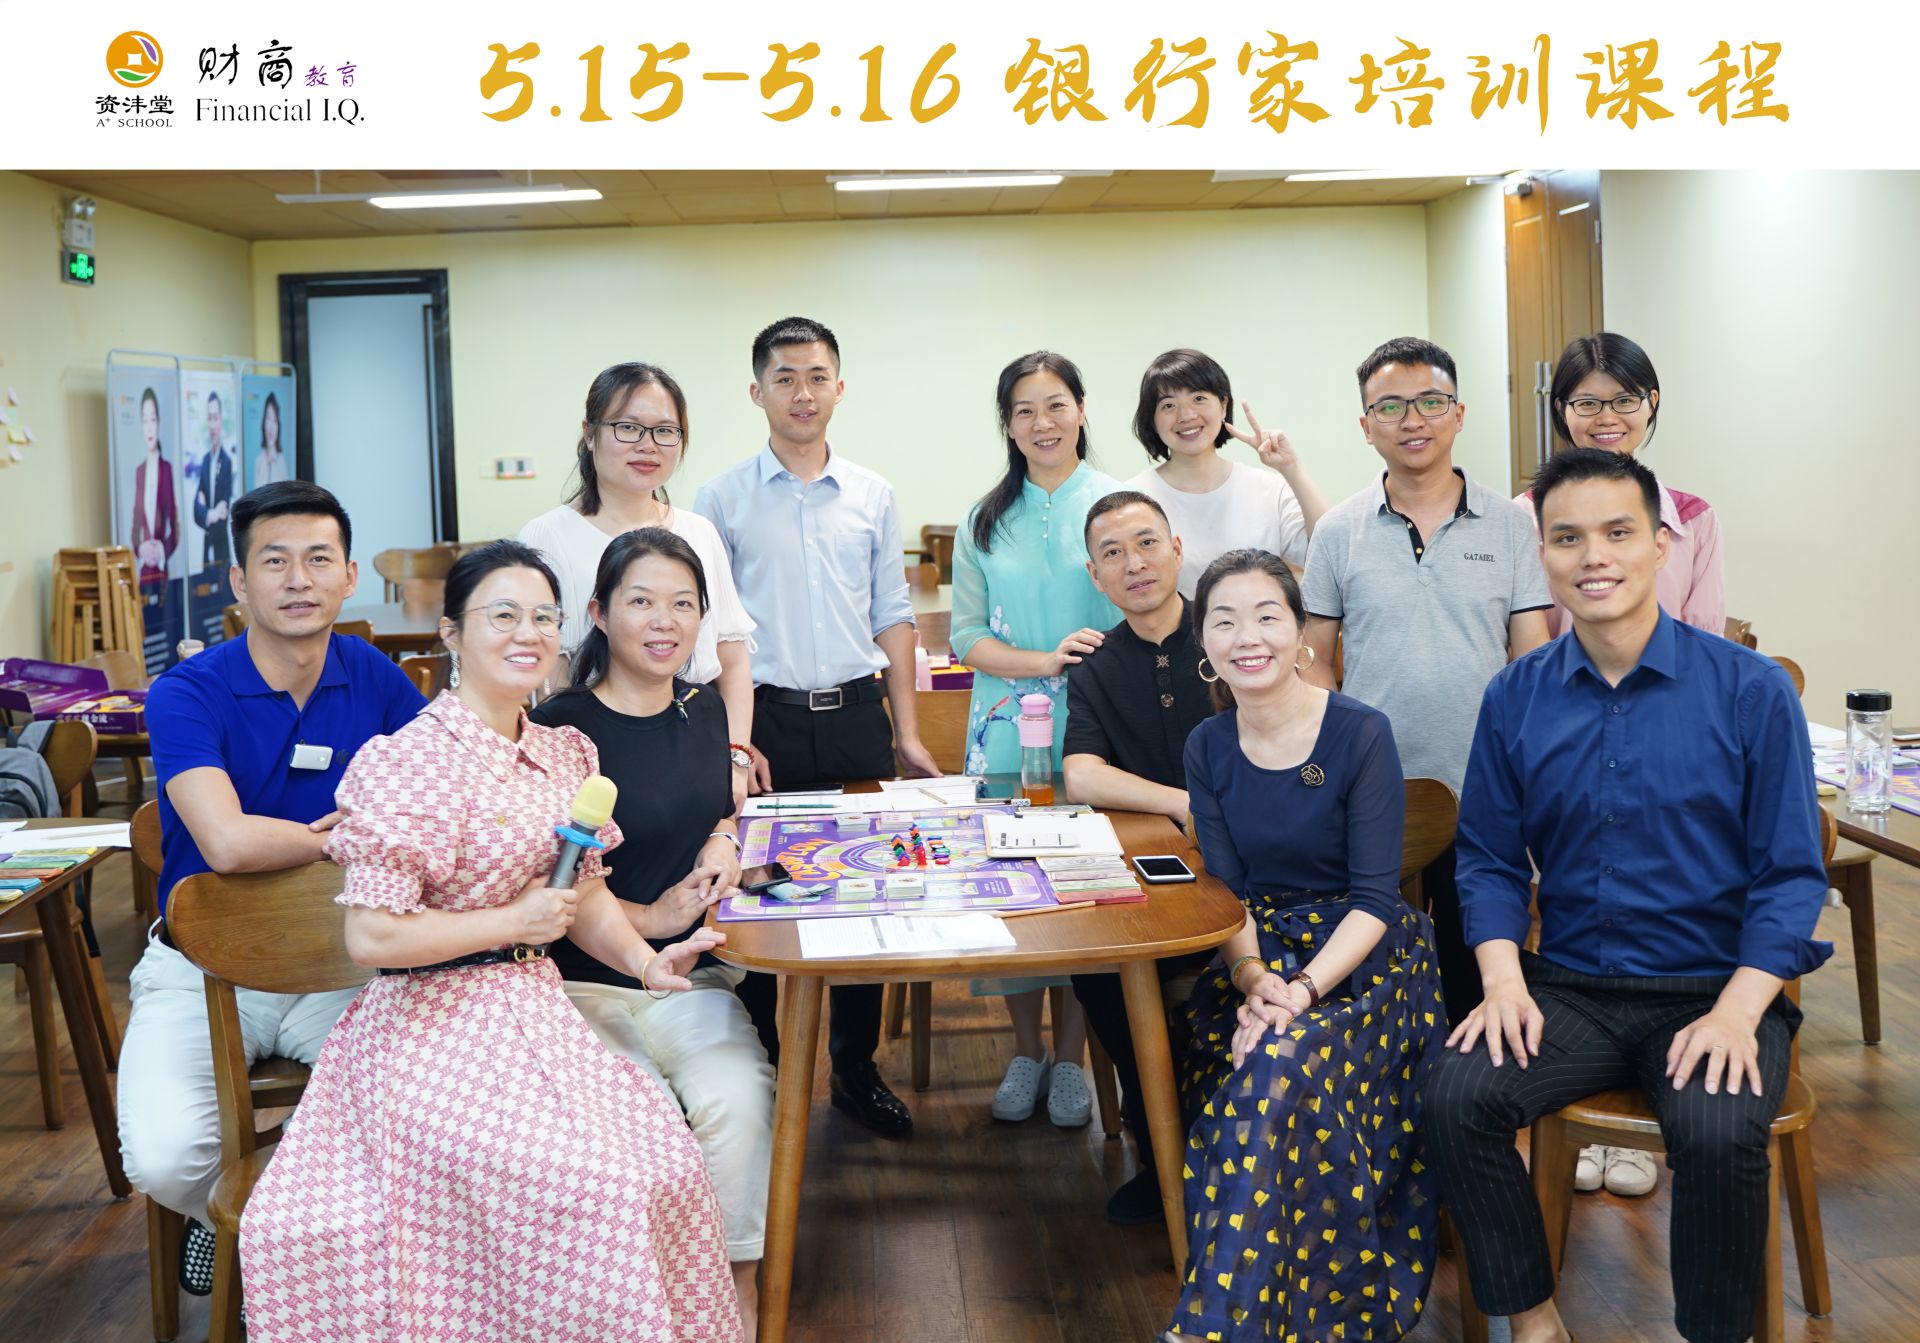 2021 5.15-5.16 银行家培训课程在广州学院开课啦!？